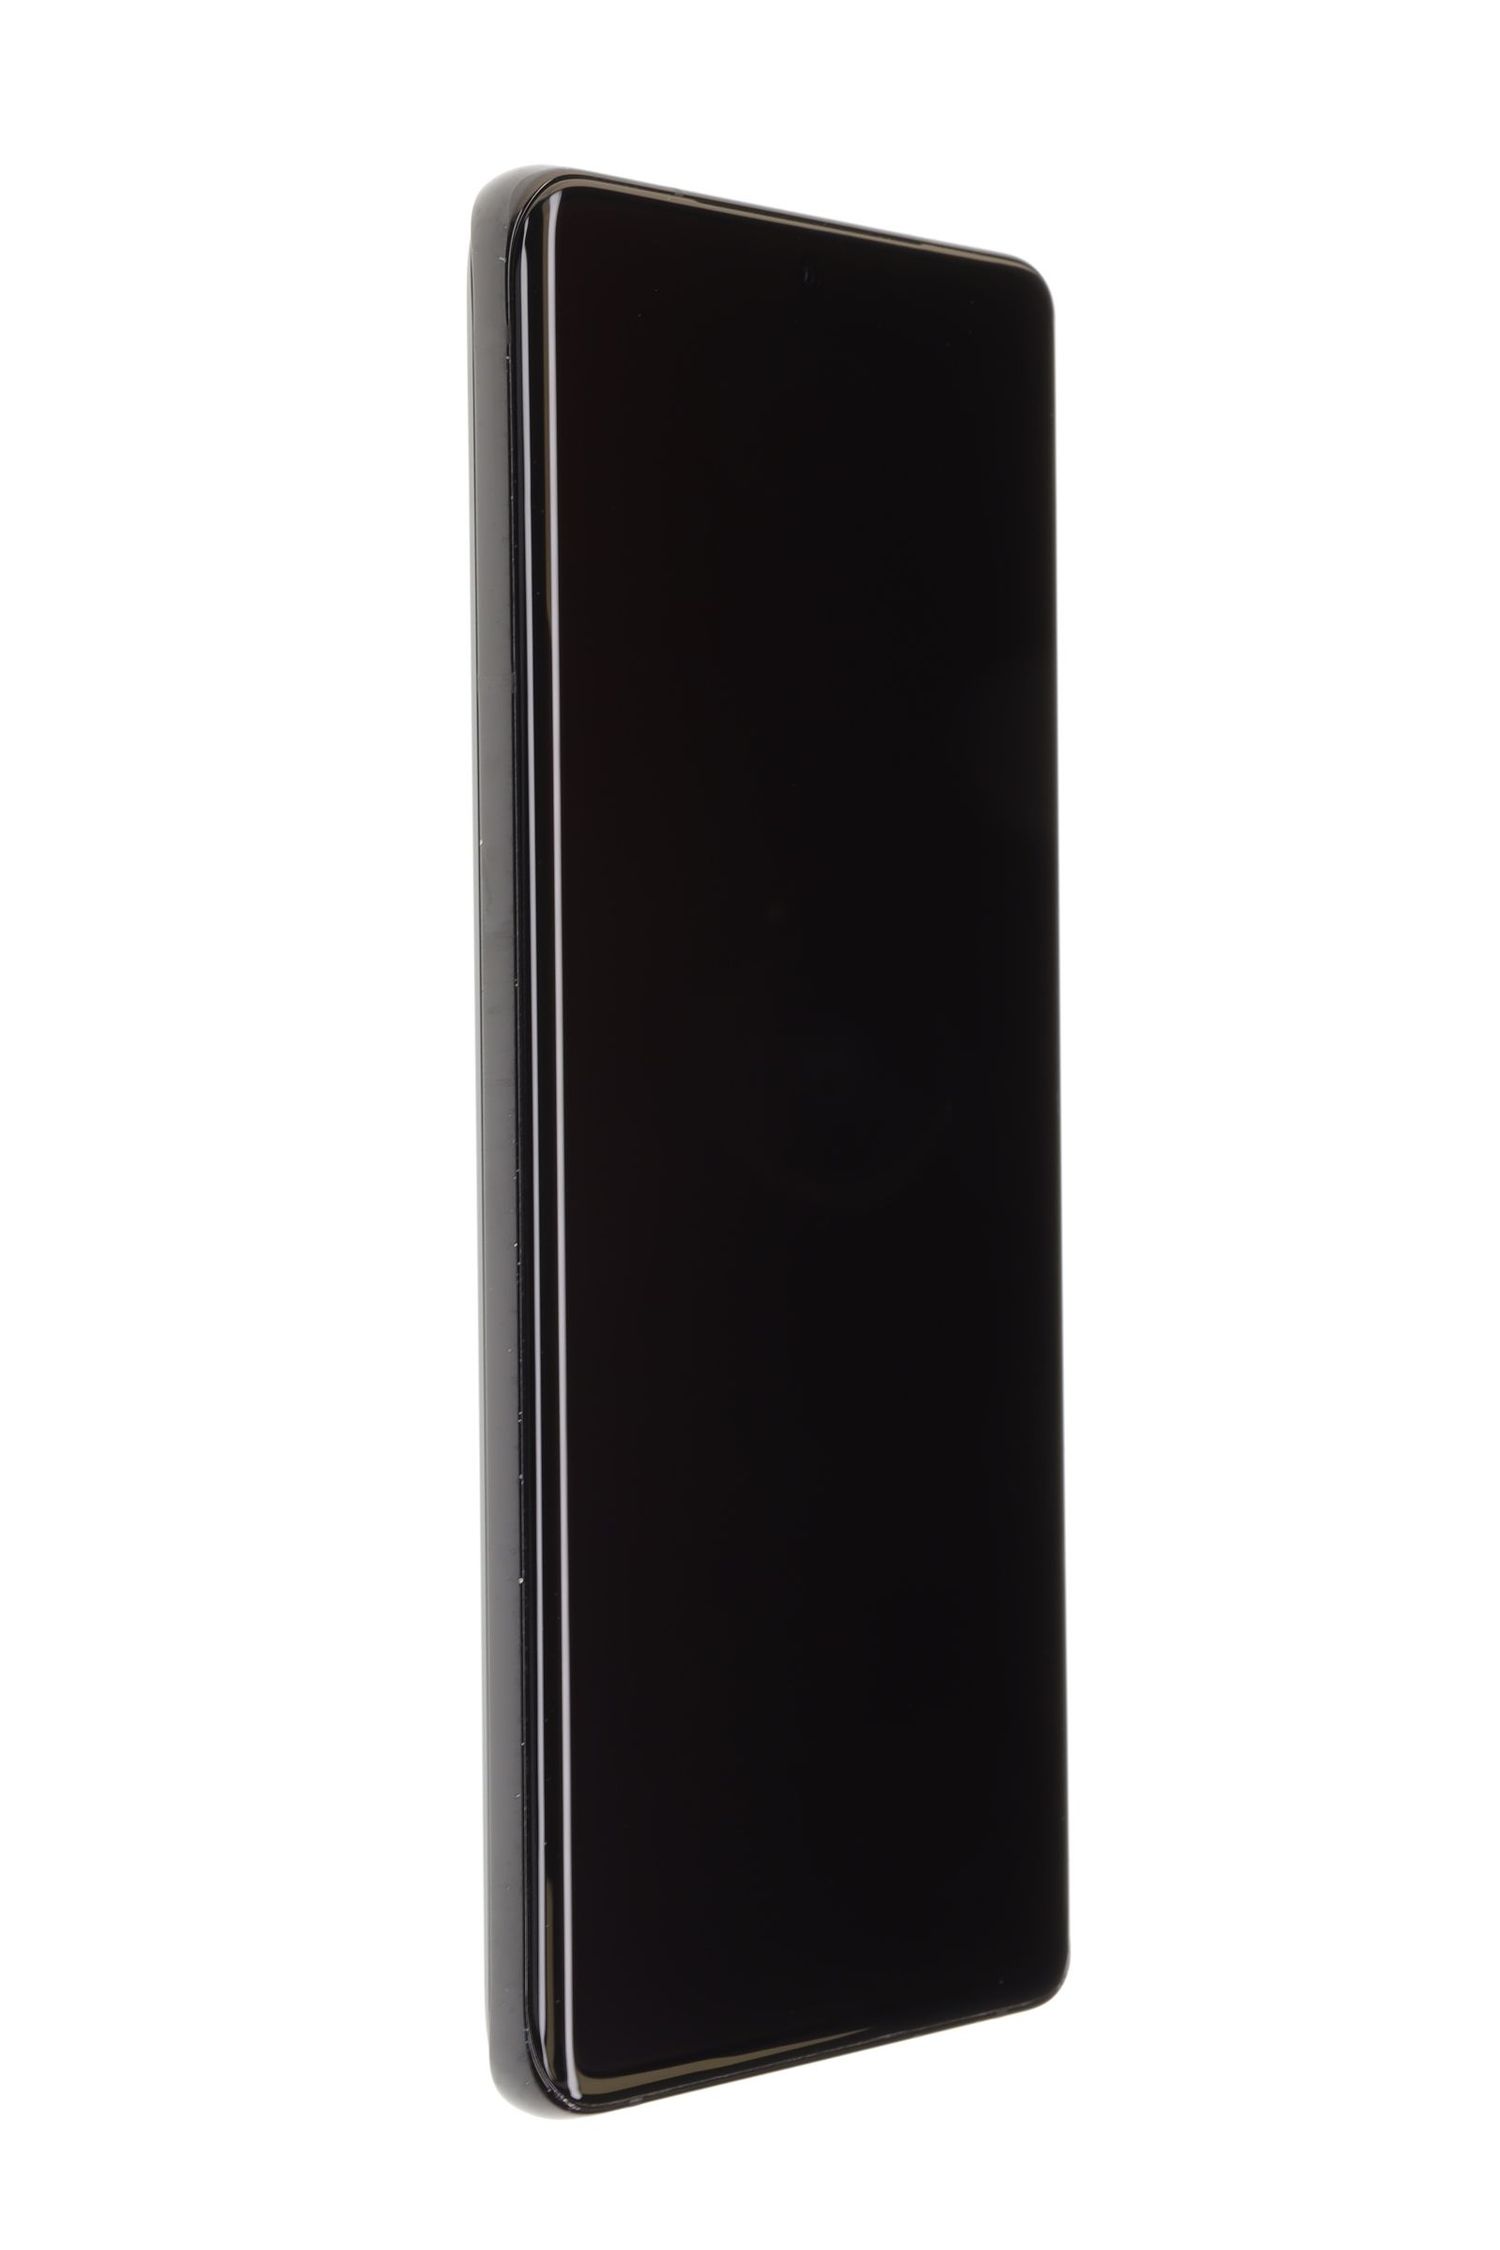 Κινητό τηλέφωνο Samsung Galaxy S21 Ultra 5G Dual Sim, Black, 128 GB, Foarte Bun